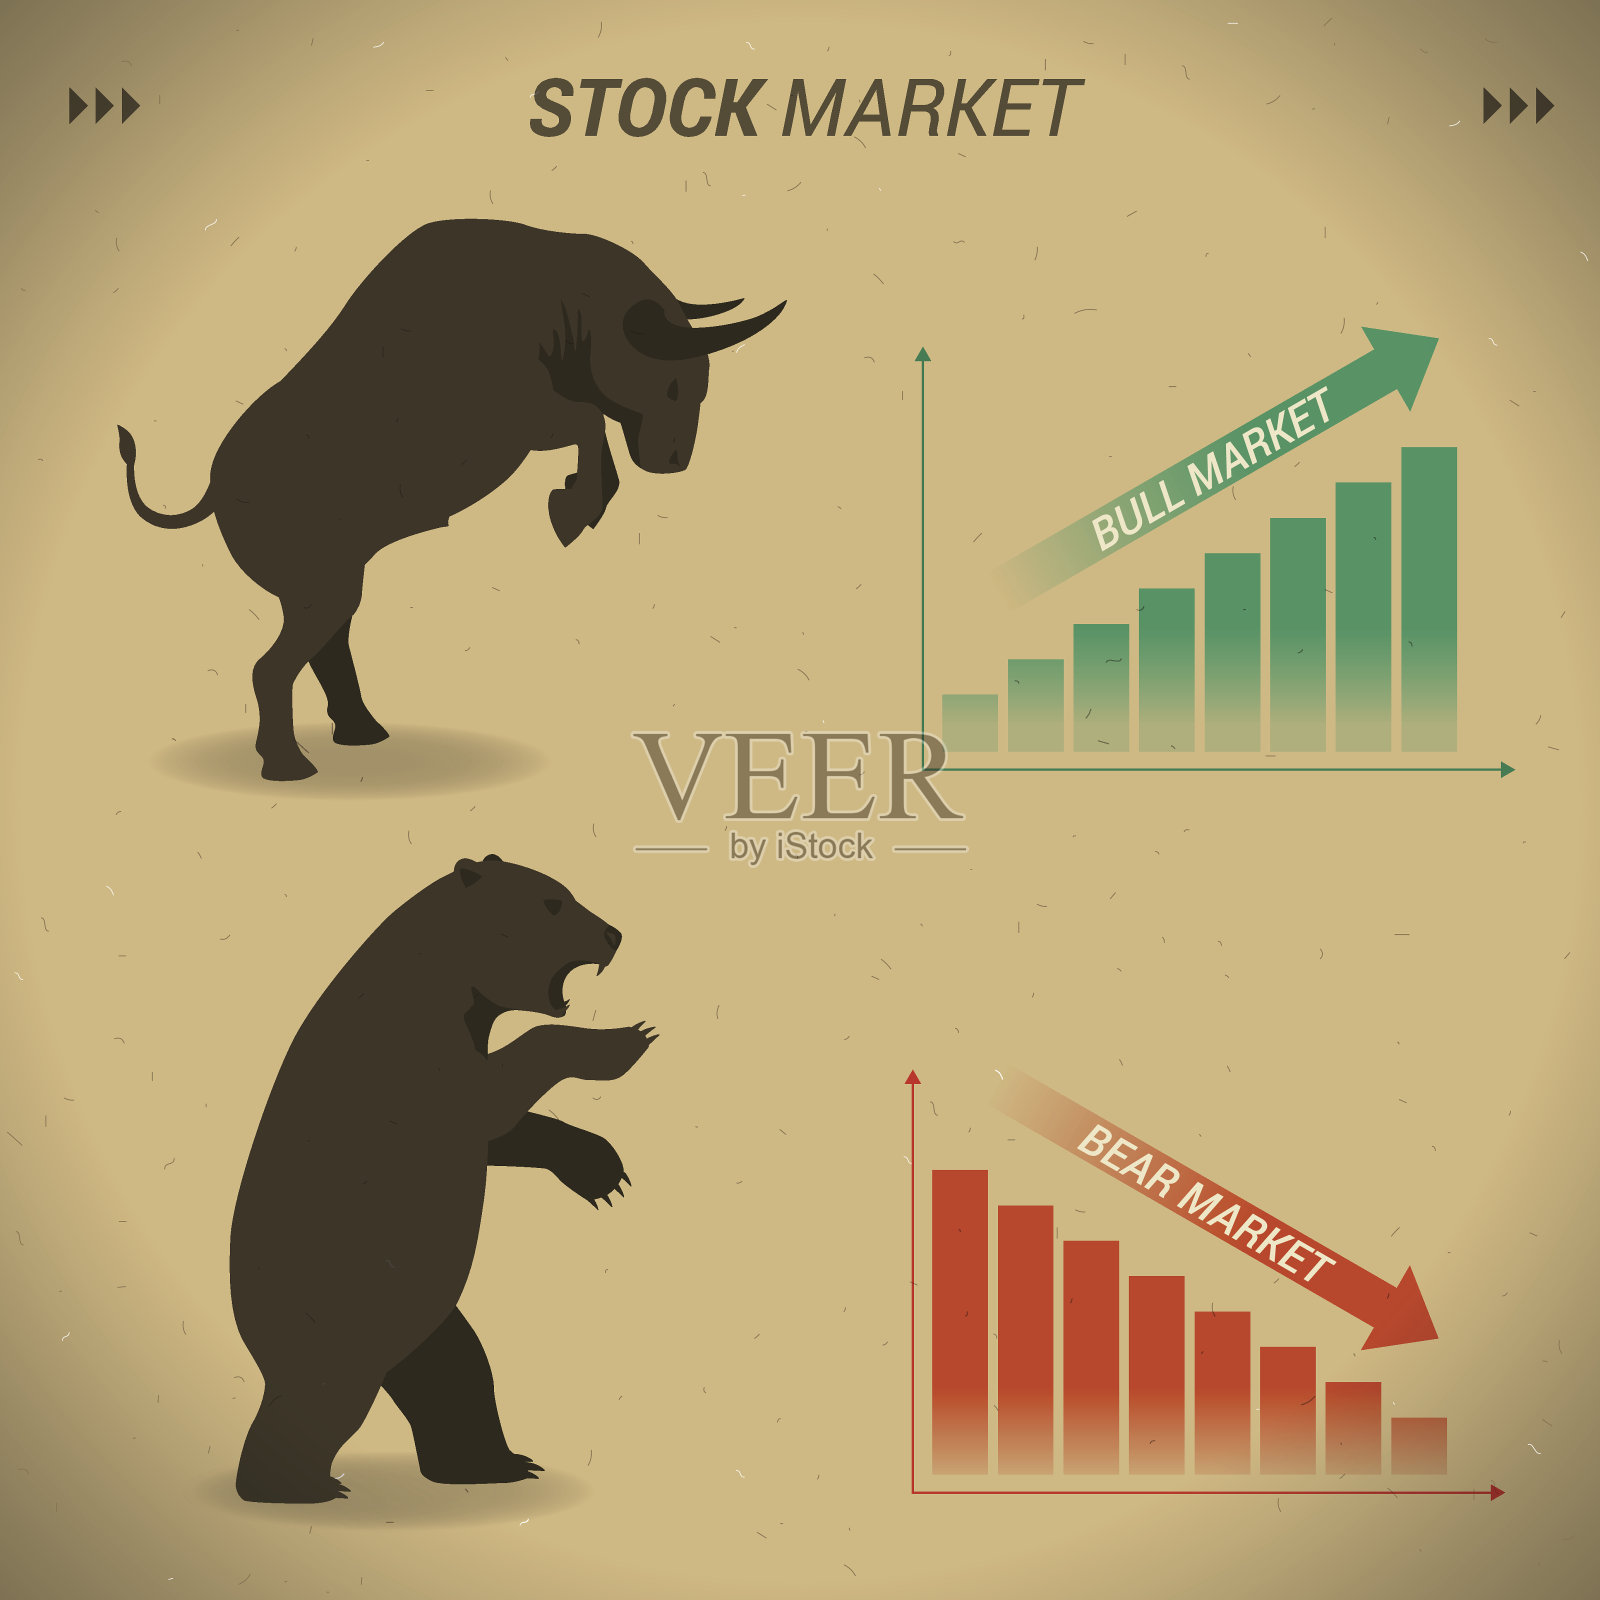 股票市场概念牛市与熊市面对的图形插画图片素材